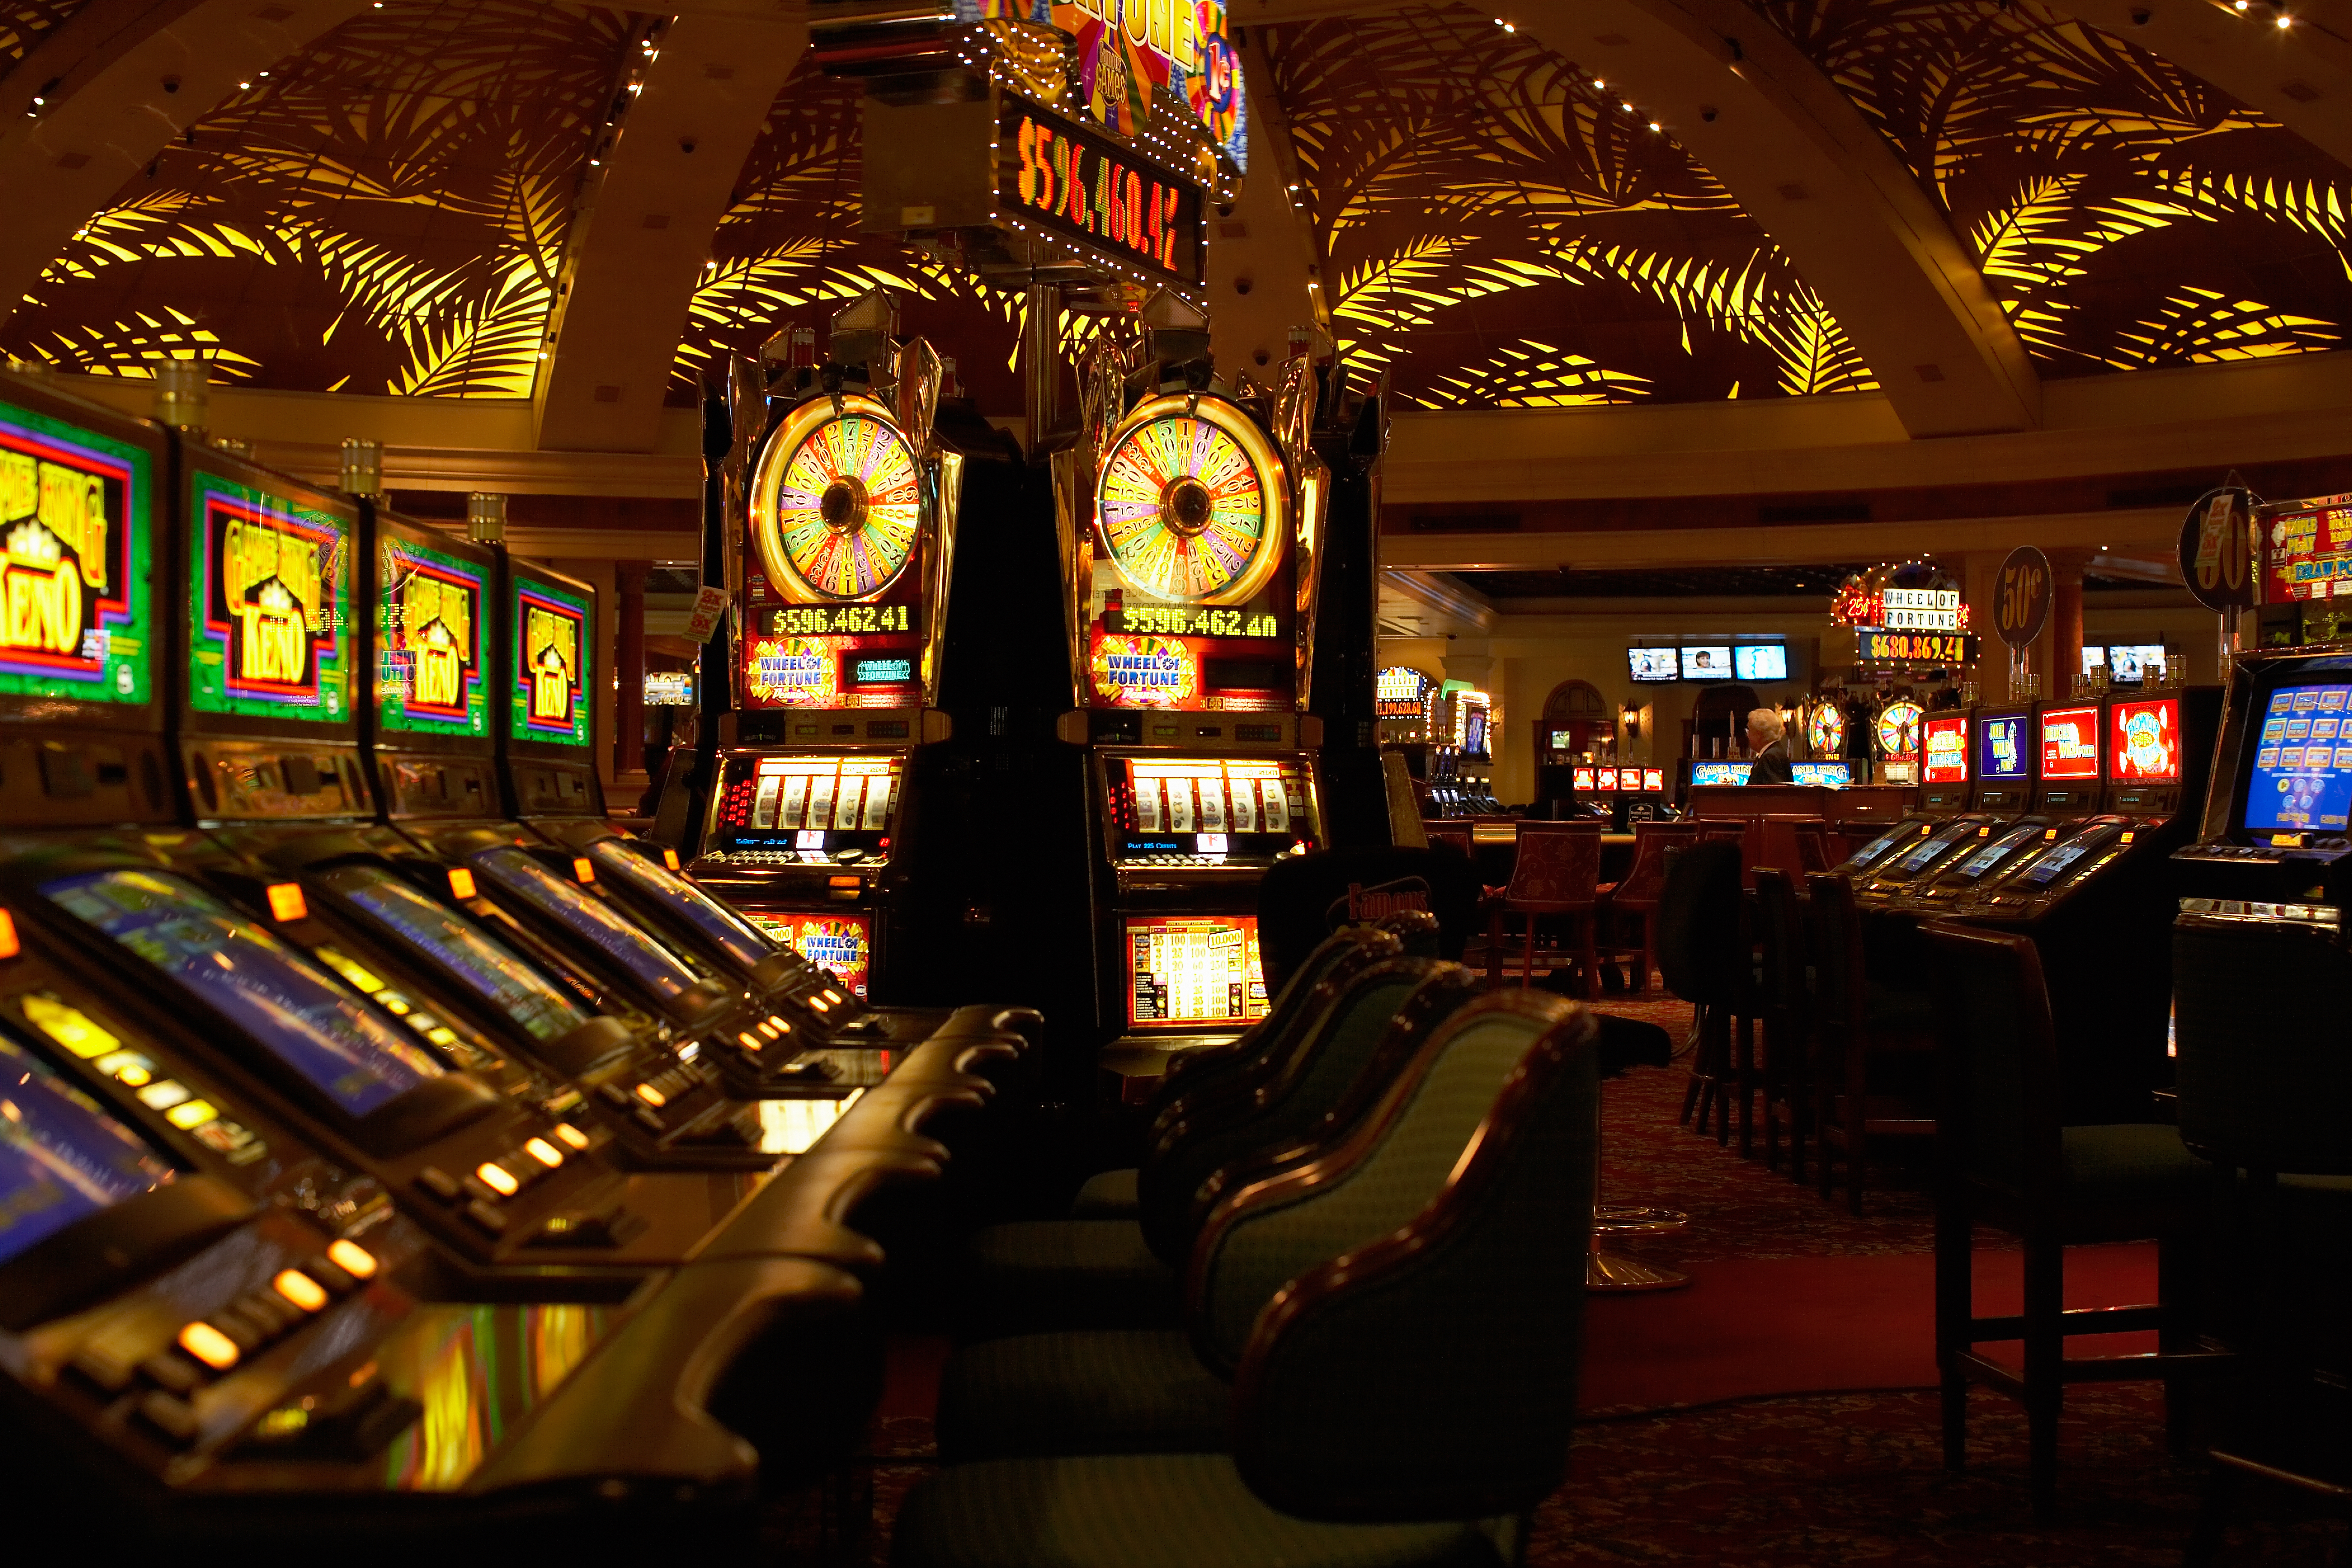 Inside the Casino - Senior Trip to Las Vegas